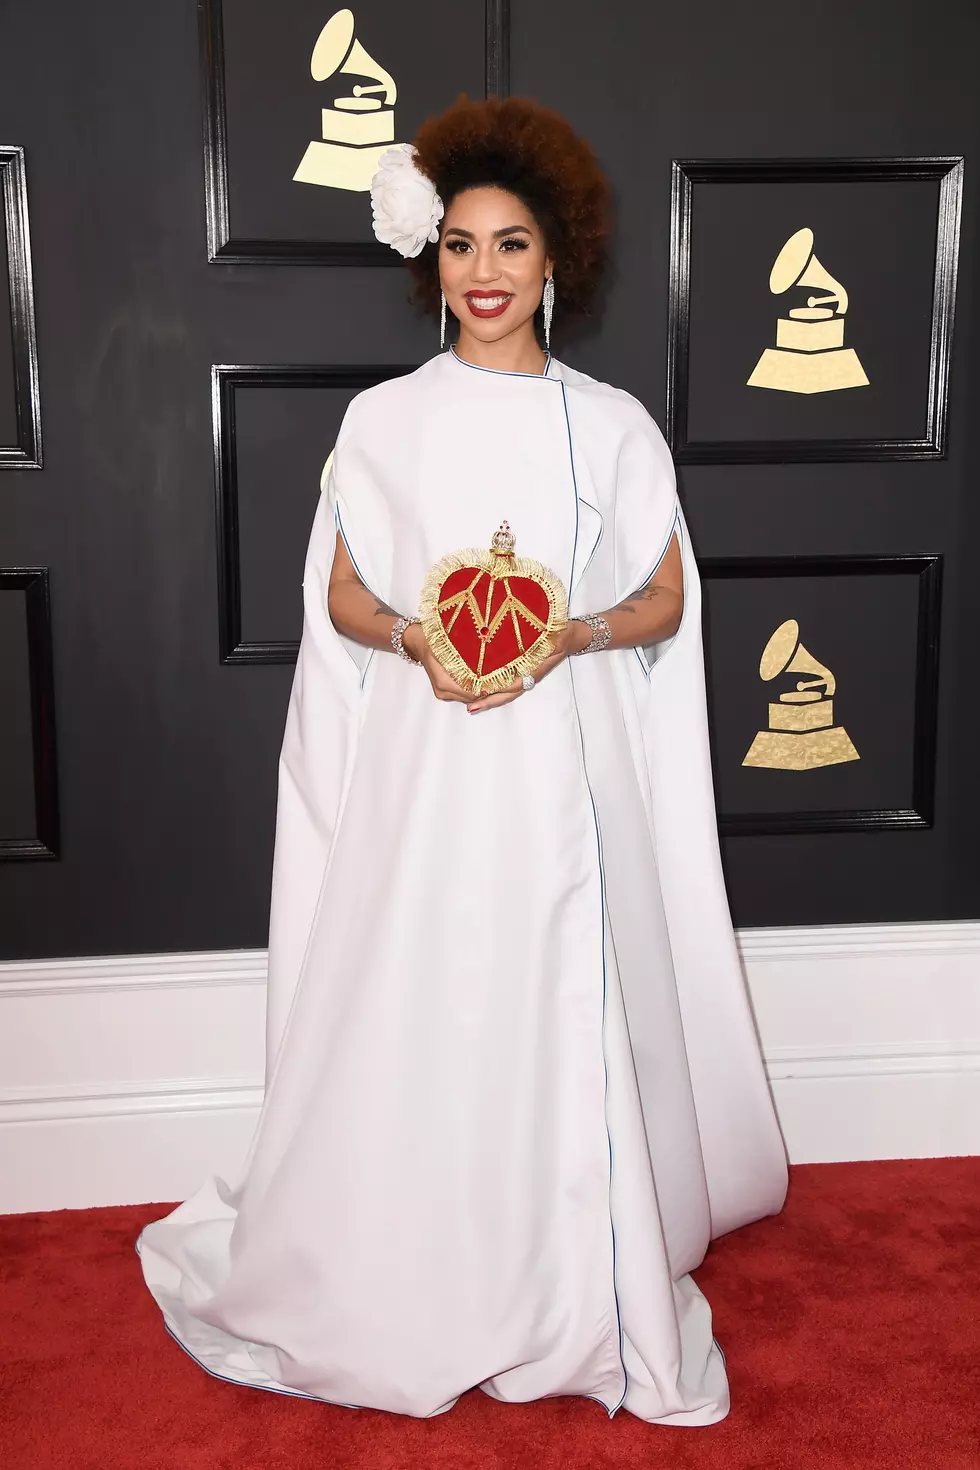 ‘Feminist’ Singer Joy Villa Wears Trump Dress at 2017 Grammy Awards